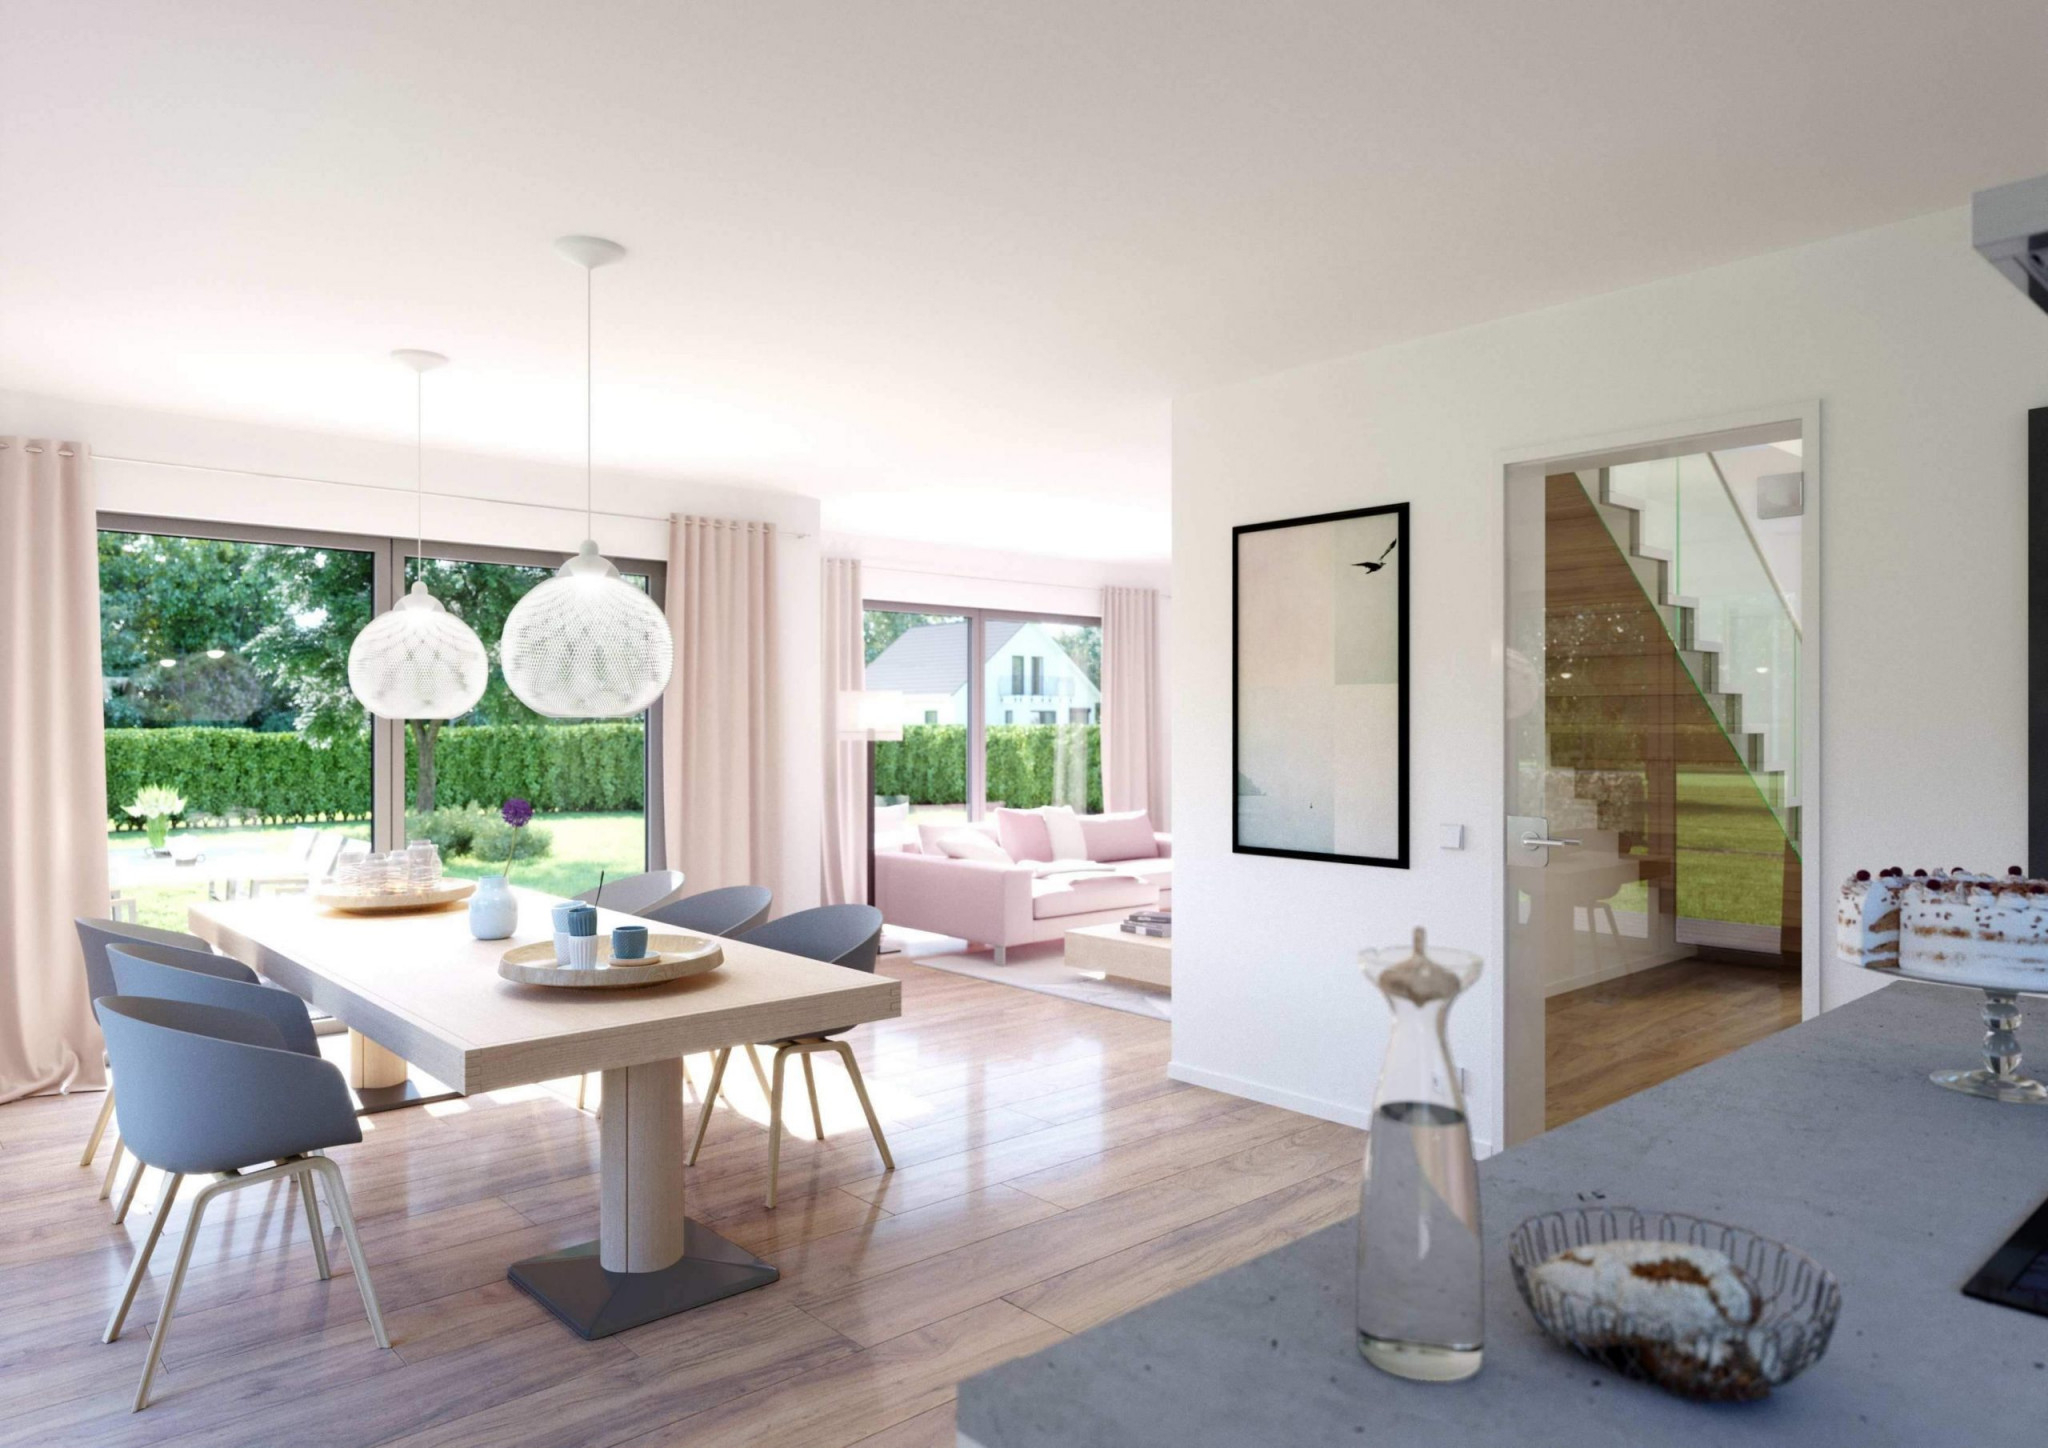 30 Luxus Kleines Wohnzimmer Mit Essbereich Einrichten von Wohnzimmer Elegant Einrichten Bild